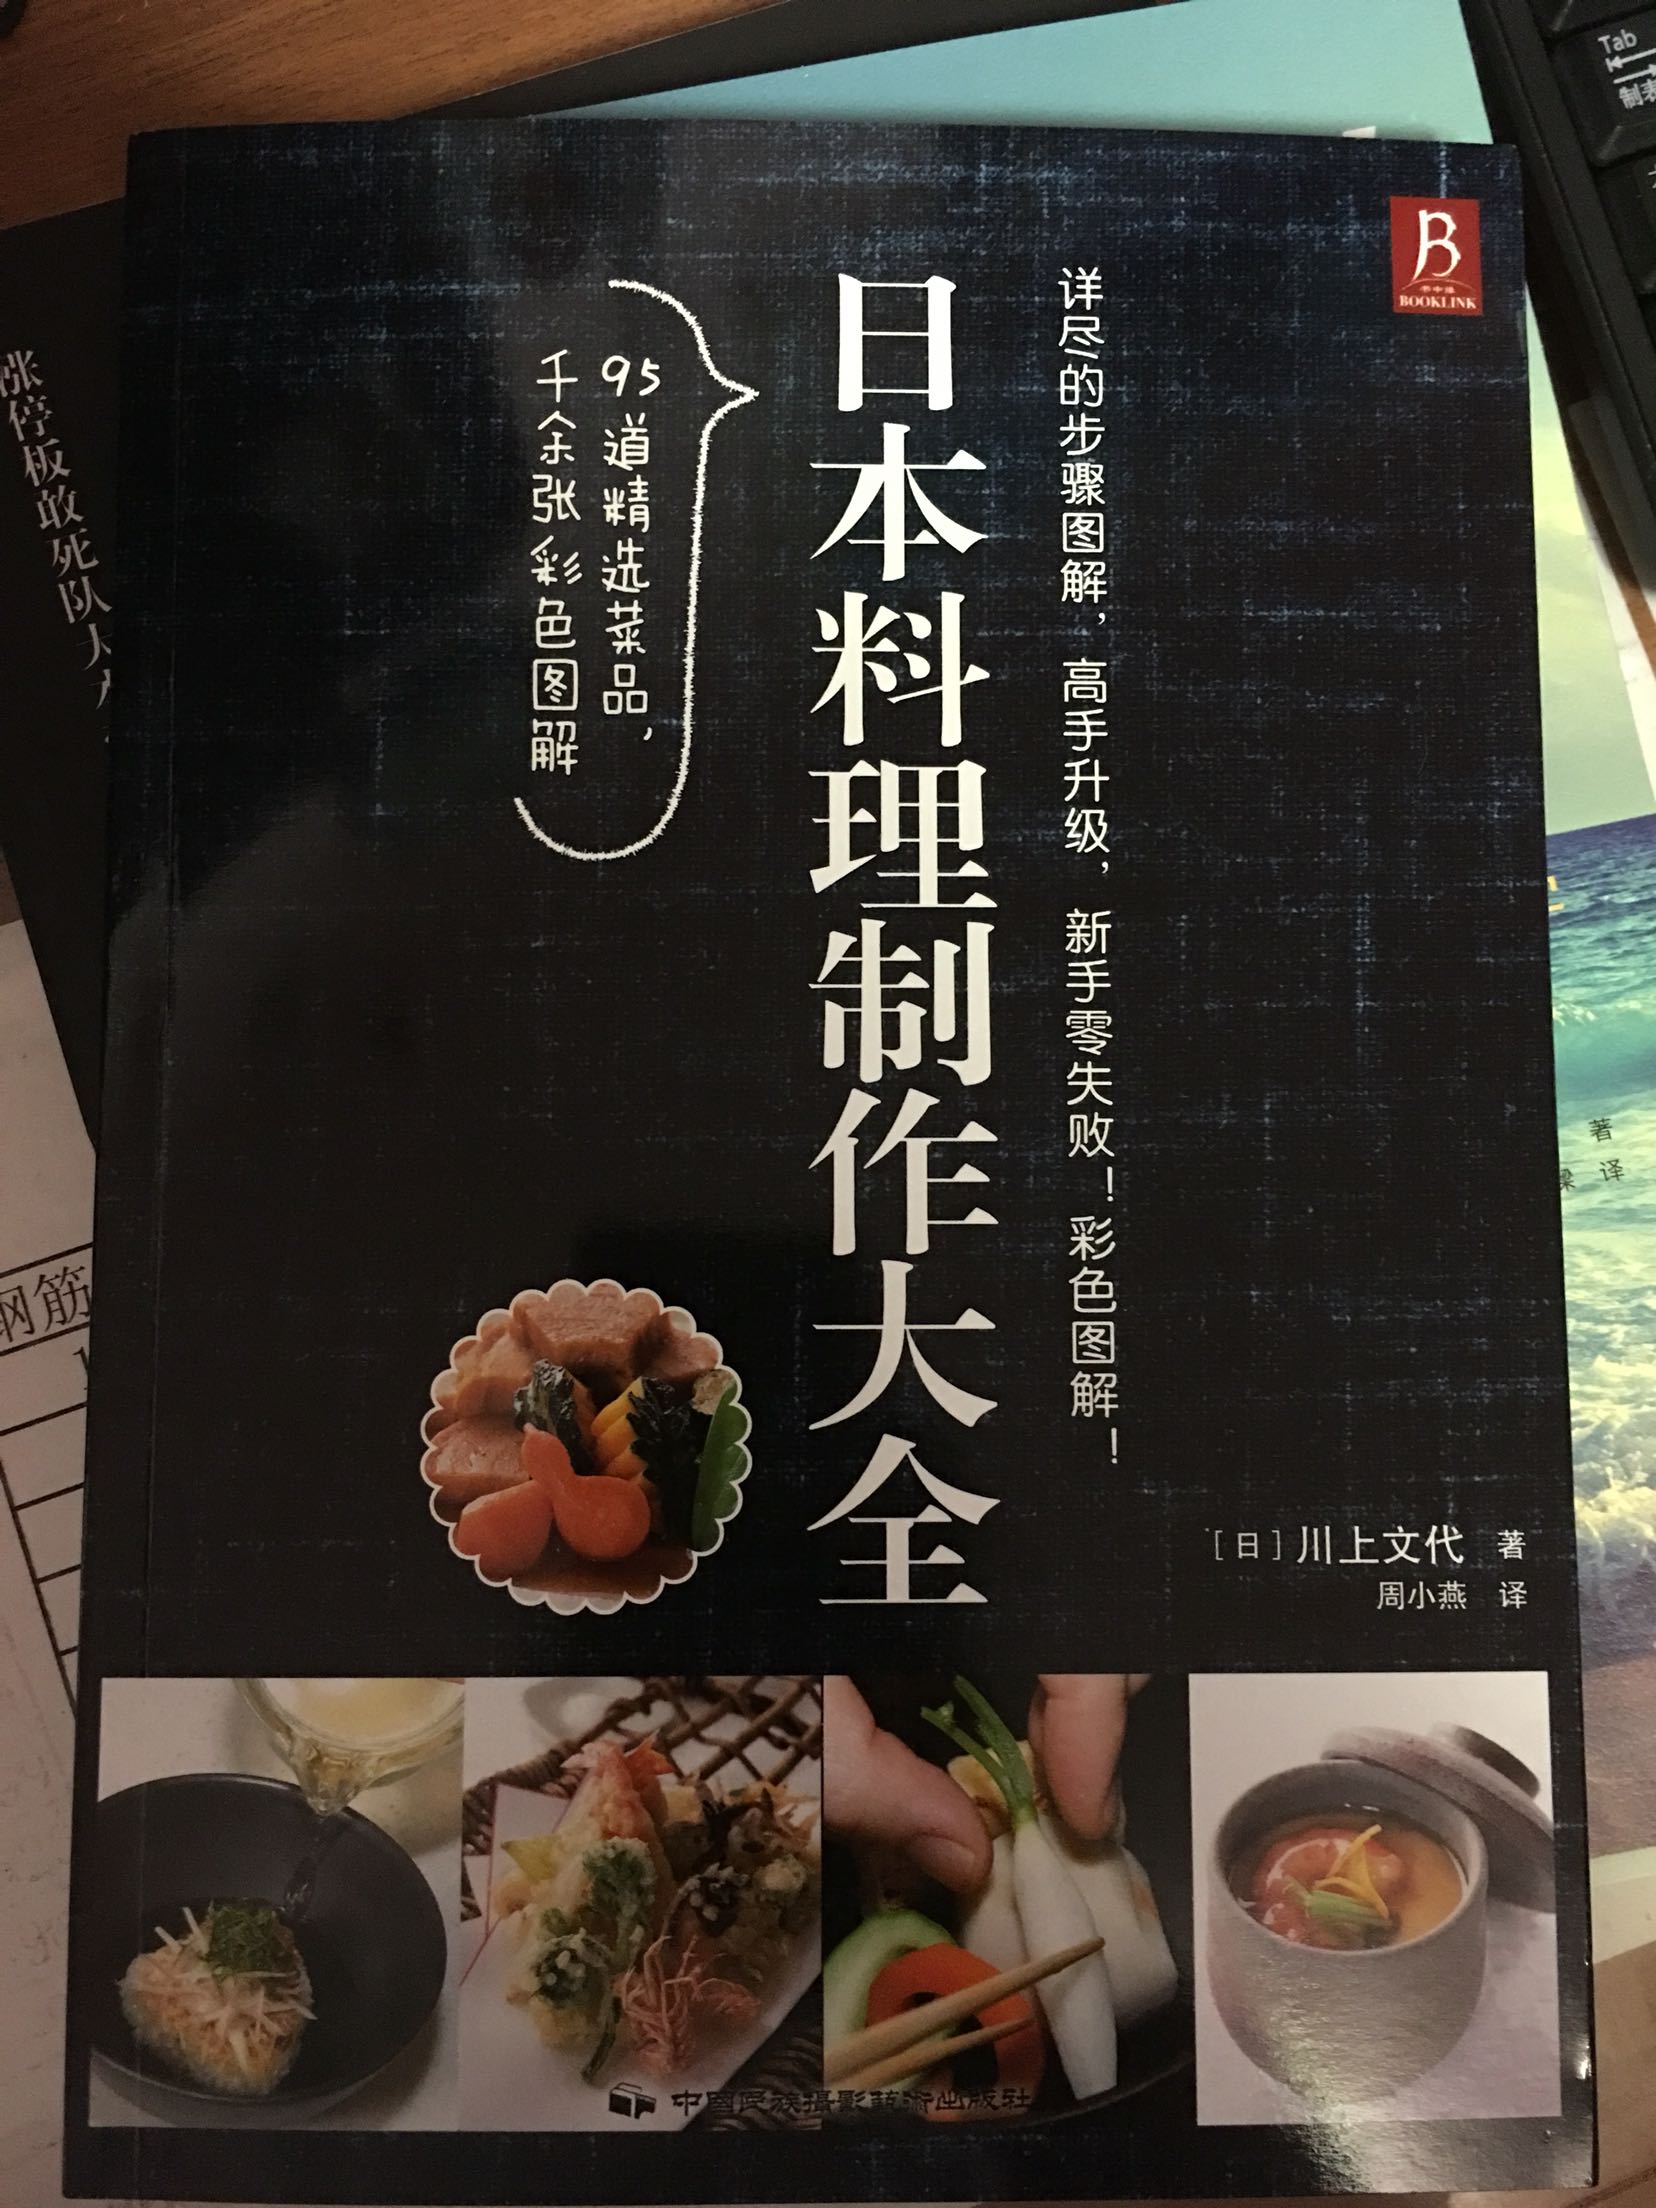 书里写的真细致，工具、调料、菜种类都写得很到位，为什么日本料理写得这么全、好！希望中国饮食也能做成如此细节的描绘！整体评，书材质好、清晰，很赞！